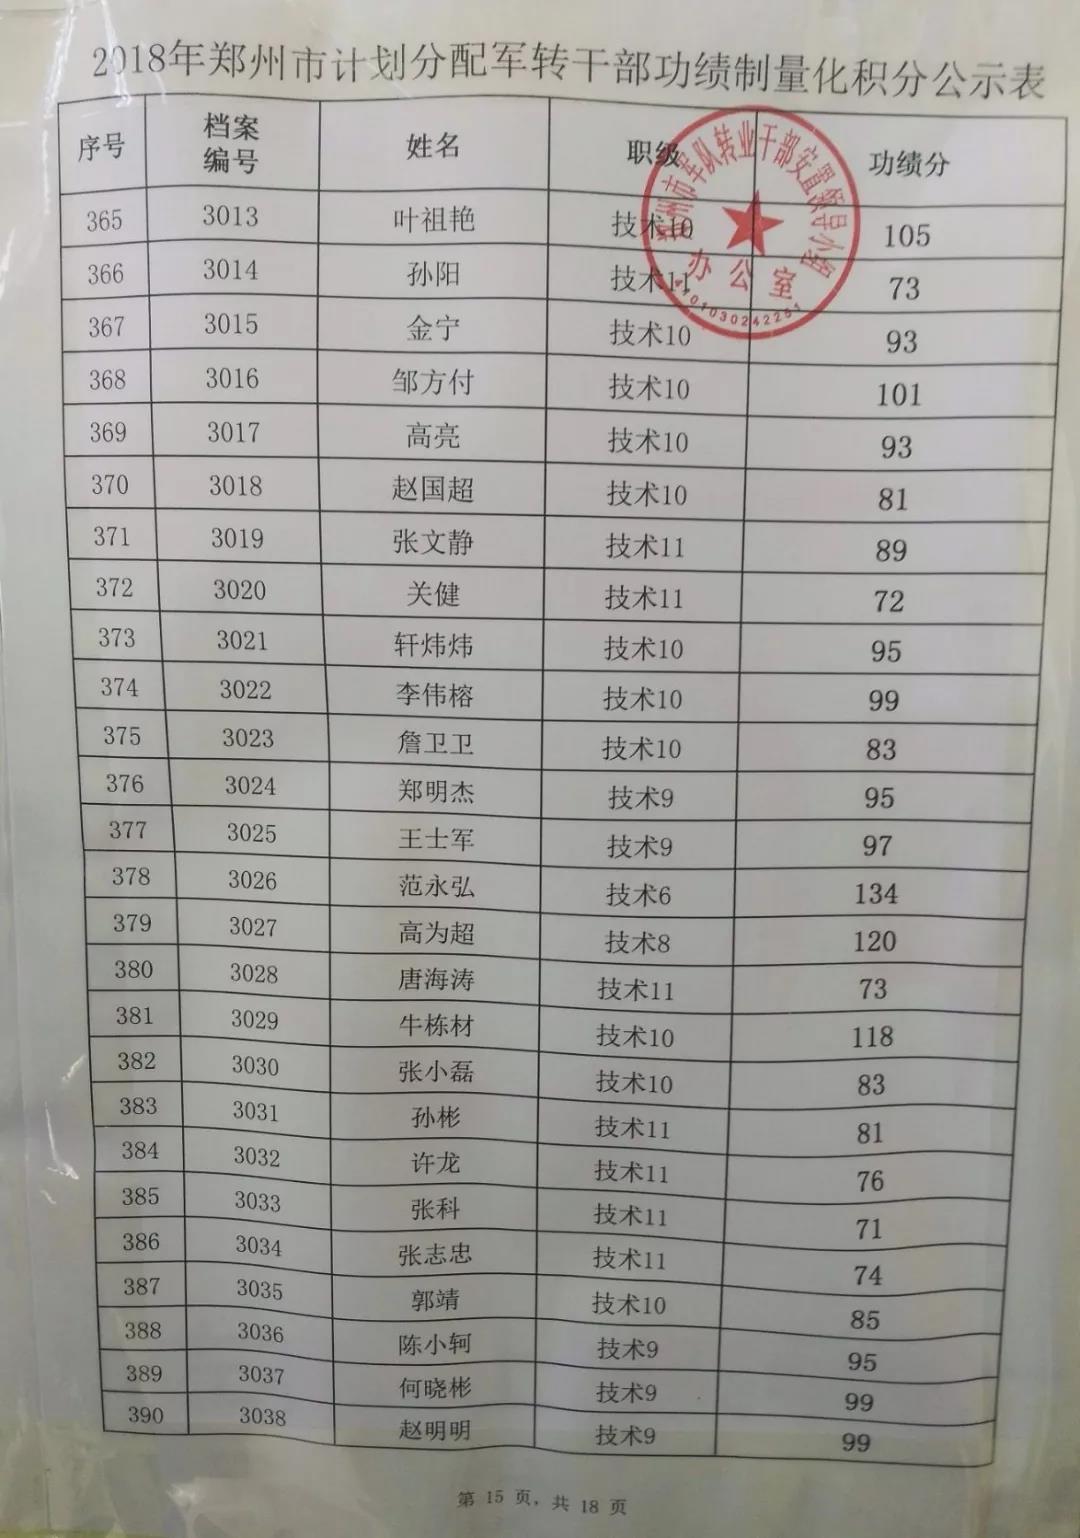 2018年郑州市军转干部功绩制量化积分公示表